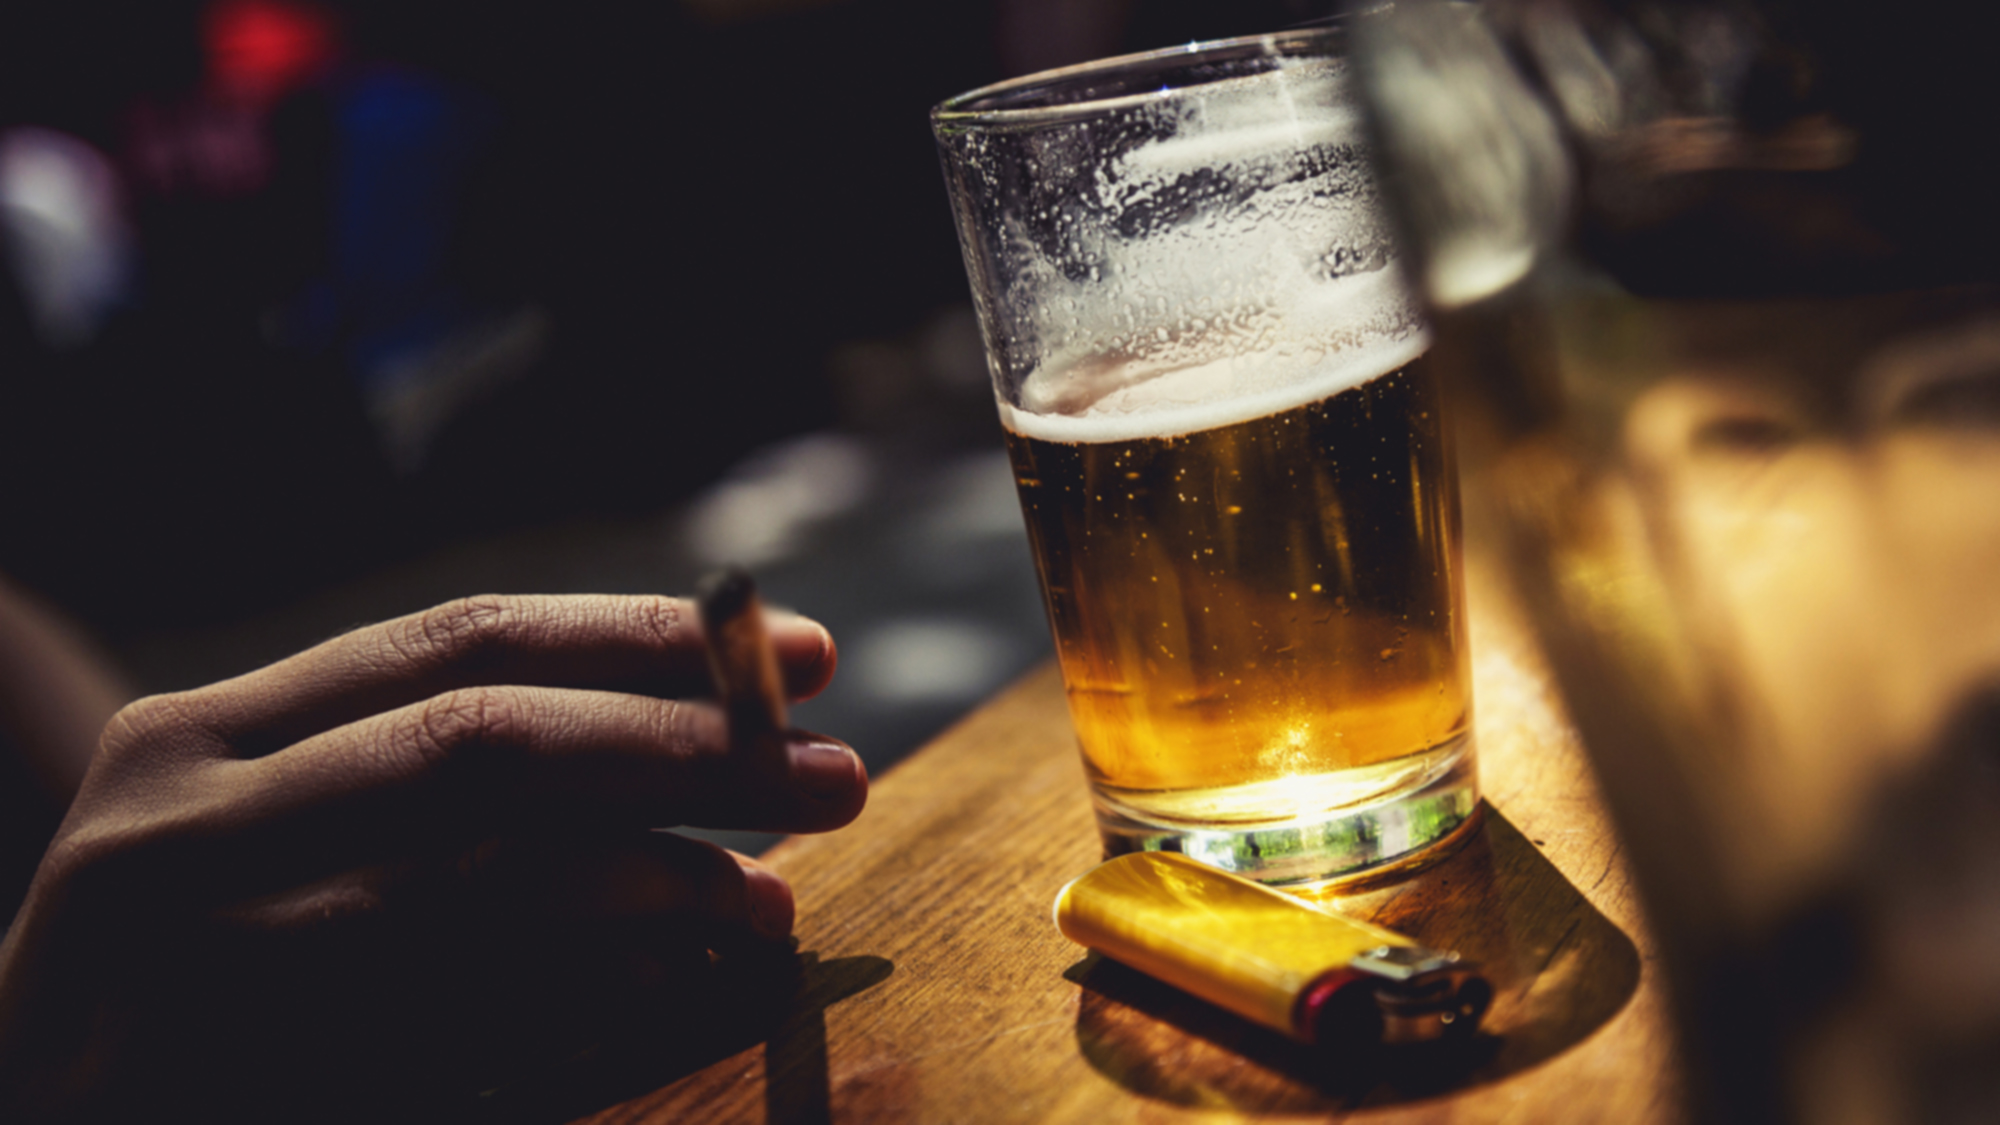   Uống nhiều rượu bia làm tăng nguy cơ ung thư đại trực tràng  